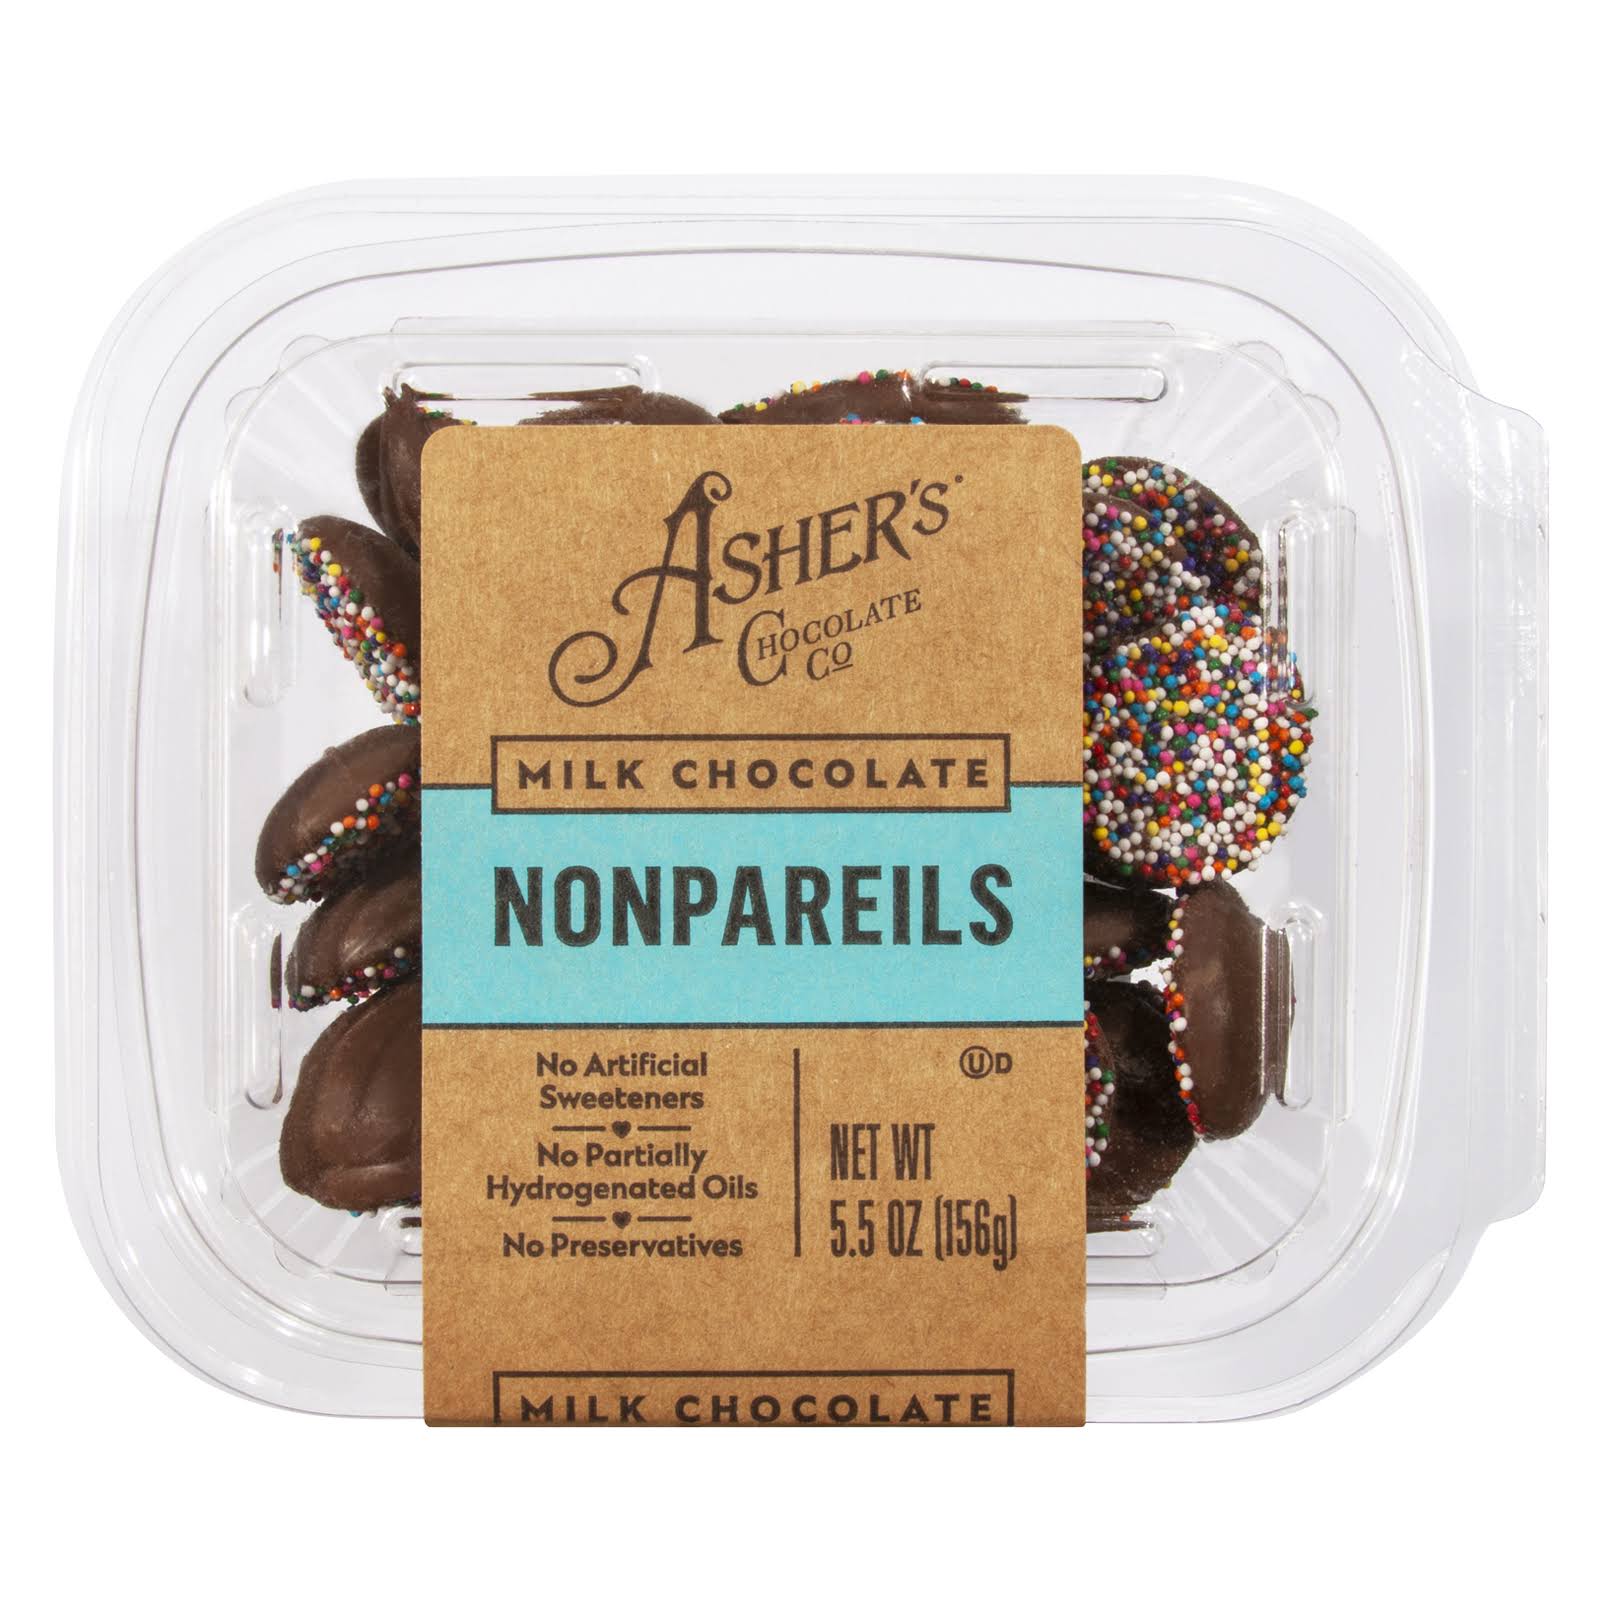 Asher's Chocolate Co Milk Chocolate Nonpareils - 5.5 oz